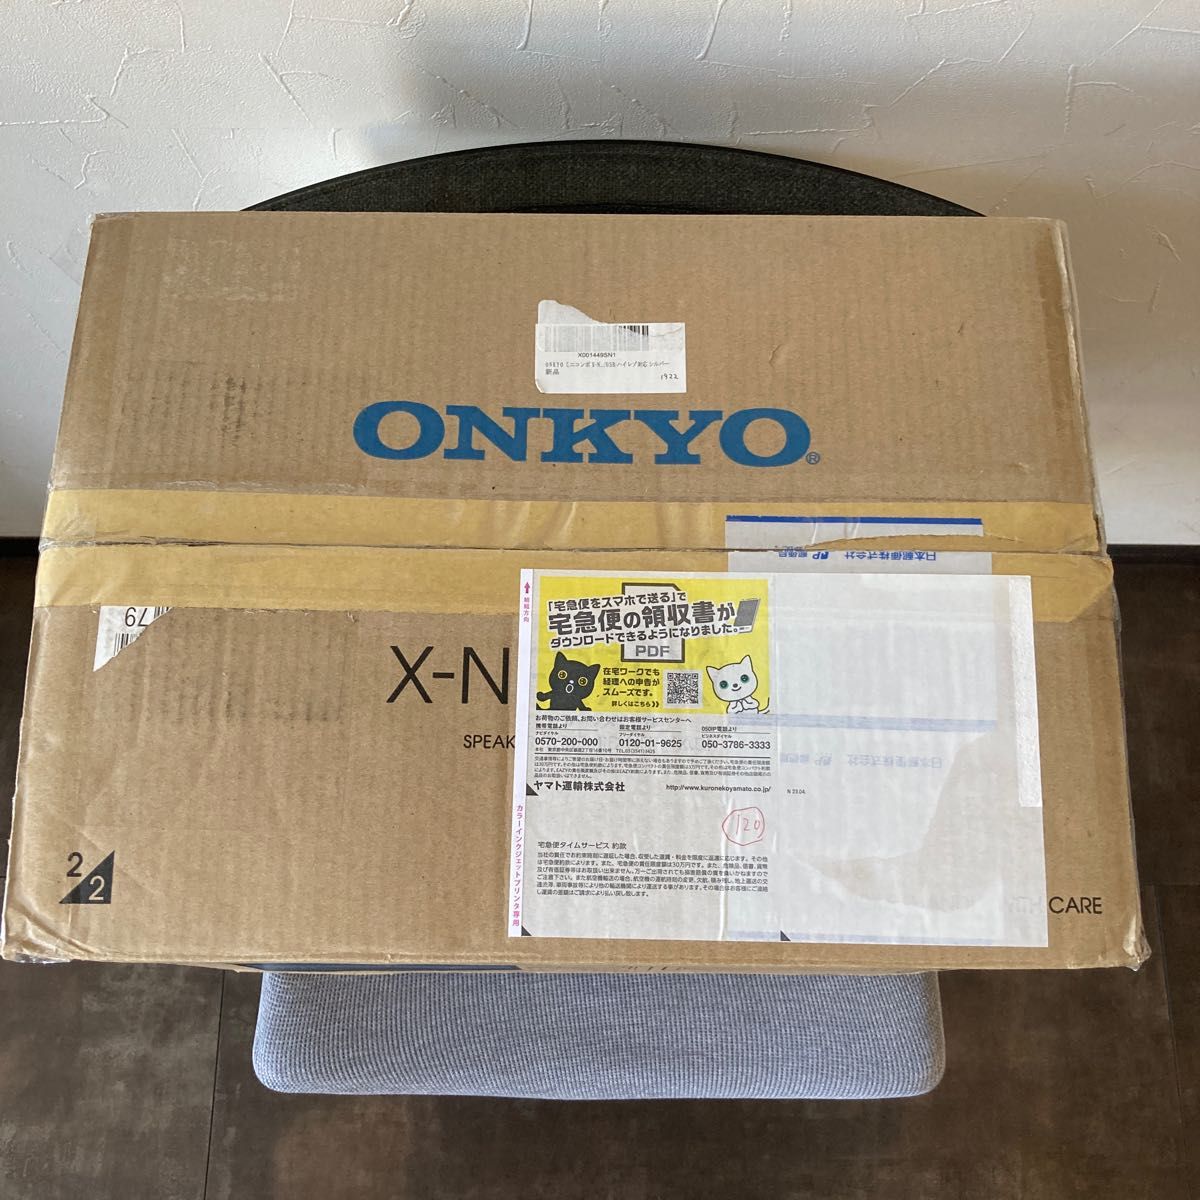 未使用　ONKYO　オンキヨー　オンキョー　　X-NFR7FX(D)　スピーカーシステム部